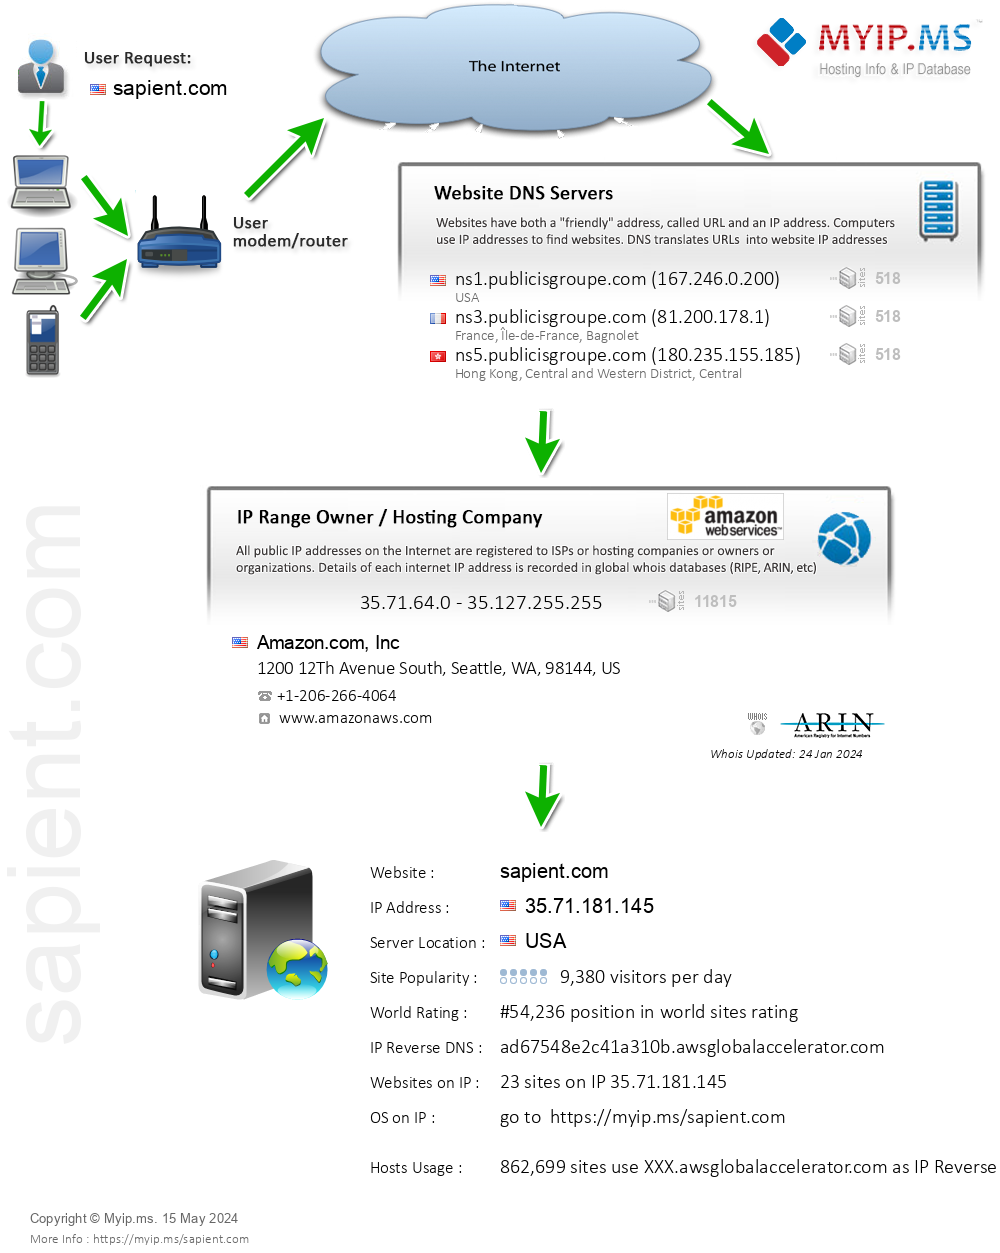 Sapient.com - Website Hosting Visual IP Diagram